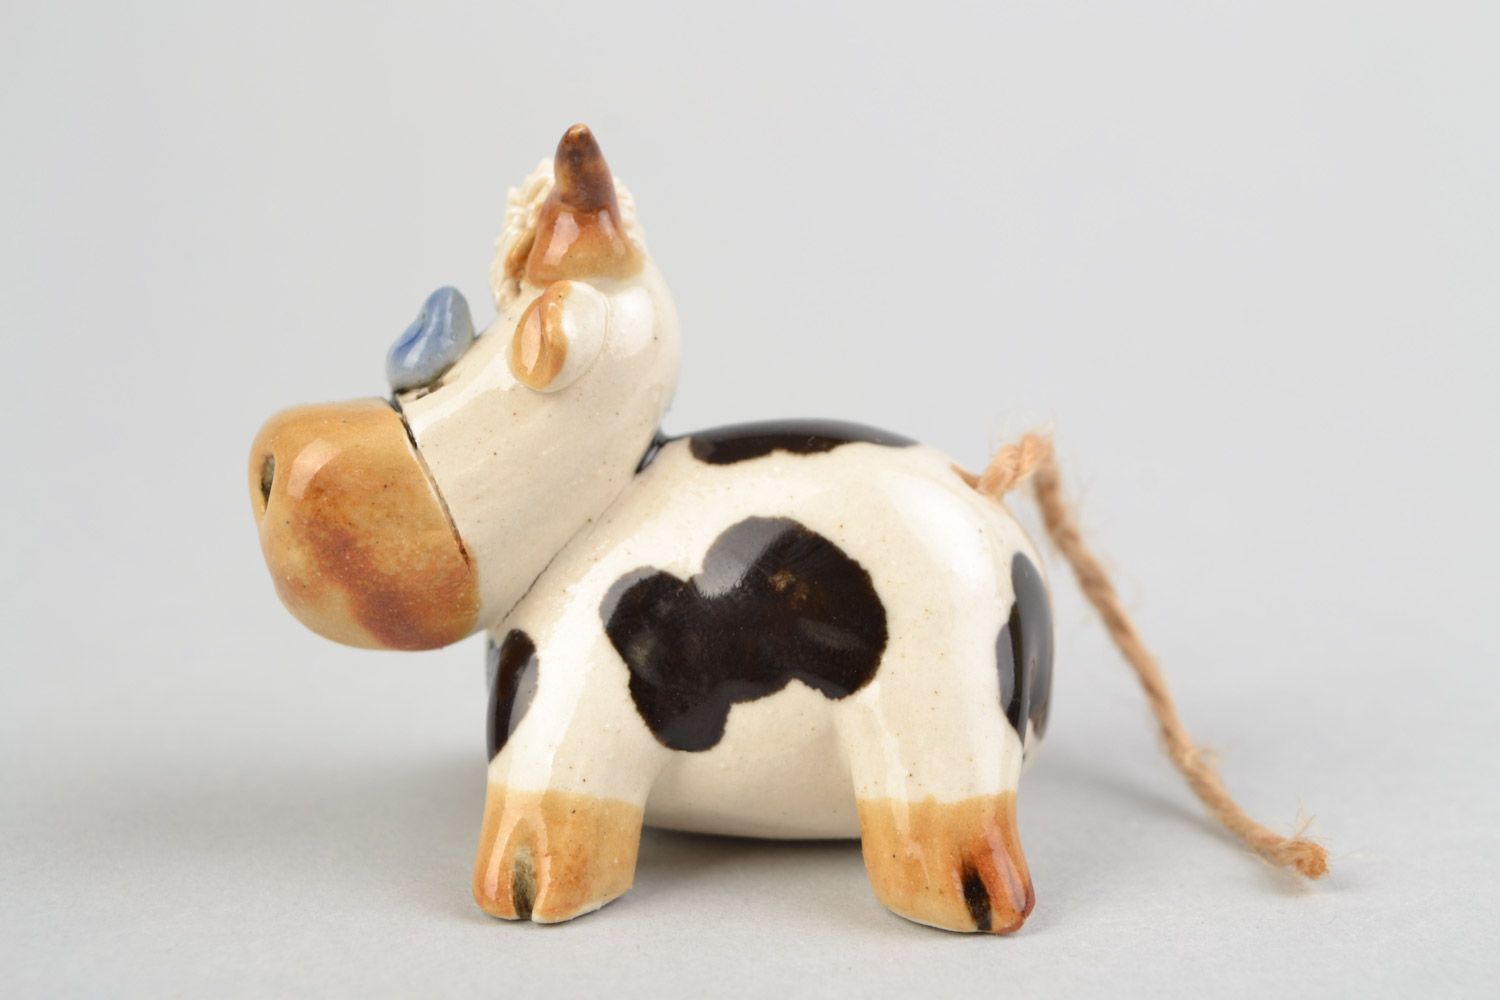 Забавная авторская расписанная глазурью глиняная фигурка коровки ручной работы фото 4